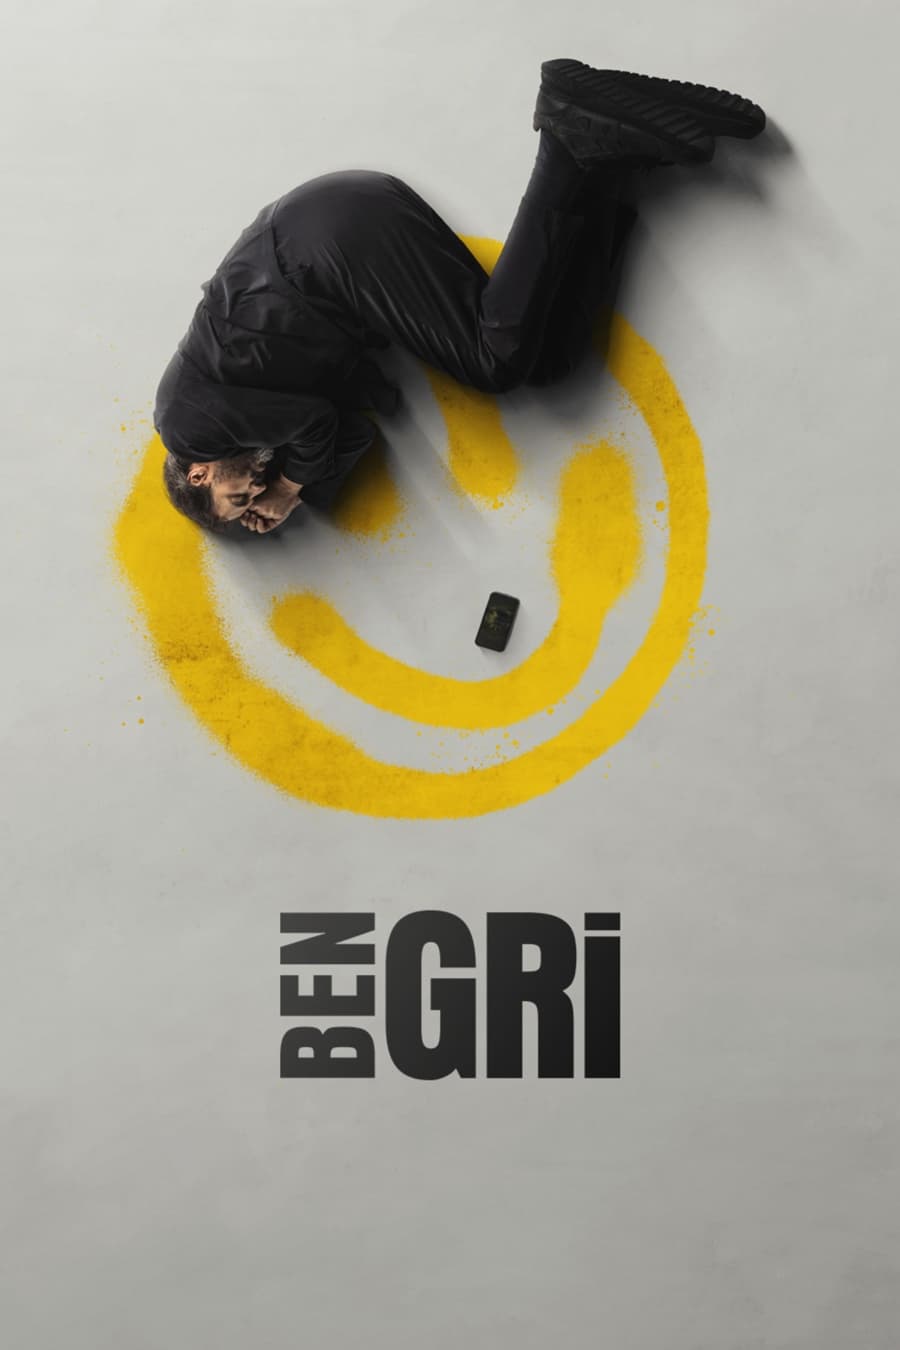 TV ratings for Ben Gri in Malaysia. Disney+ TV series